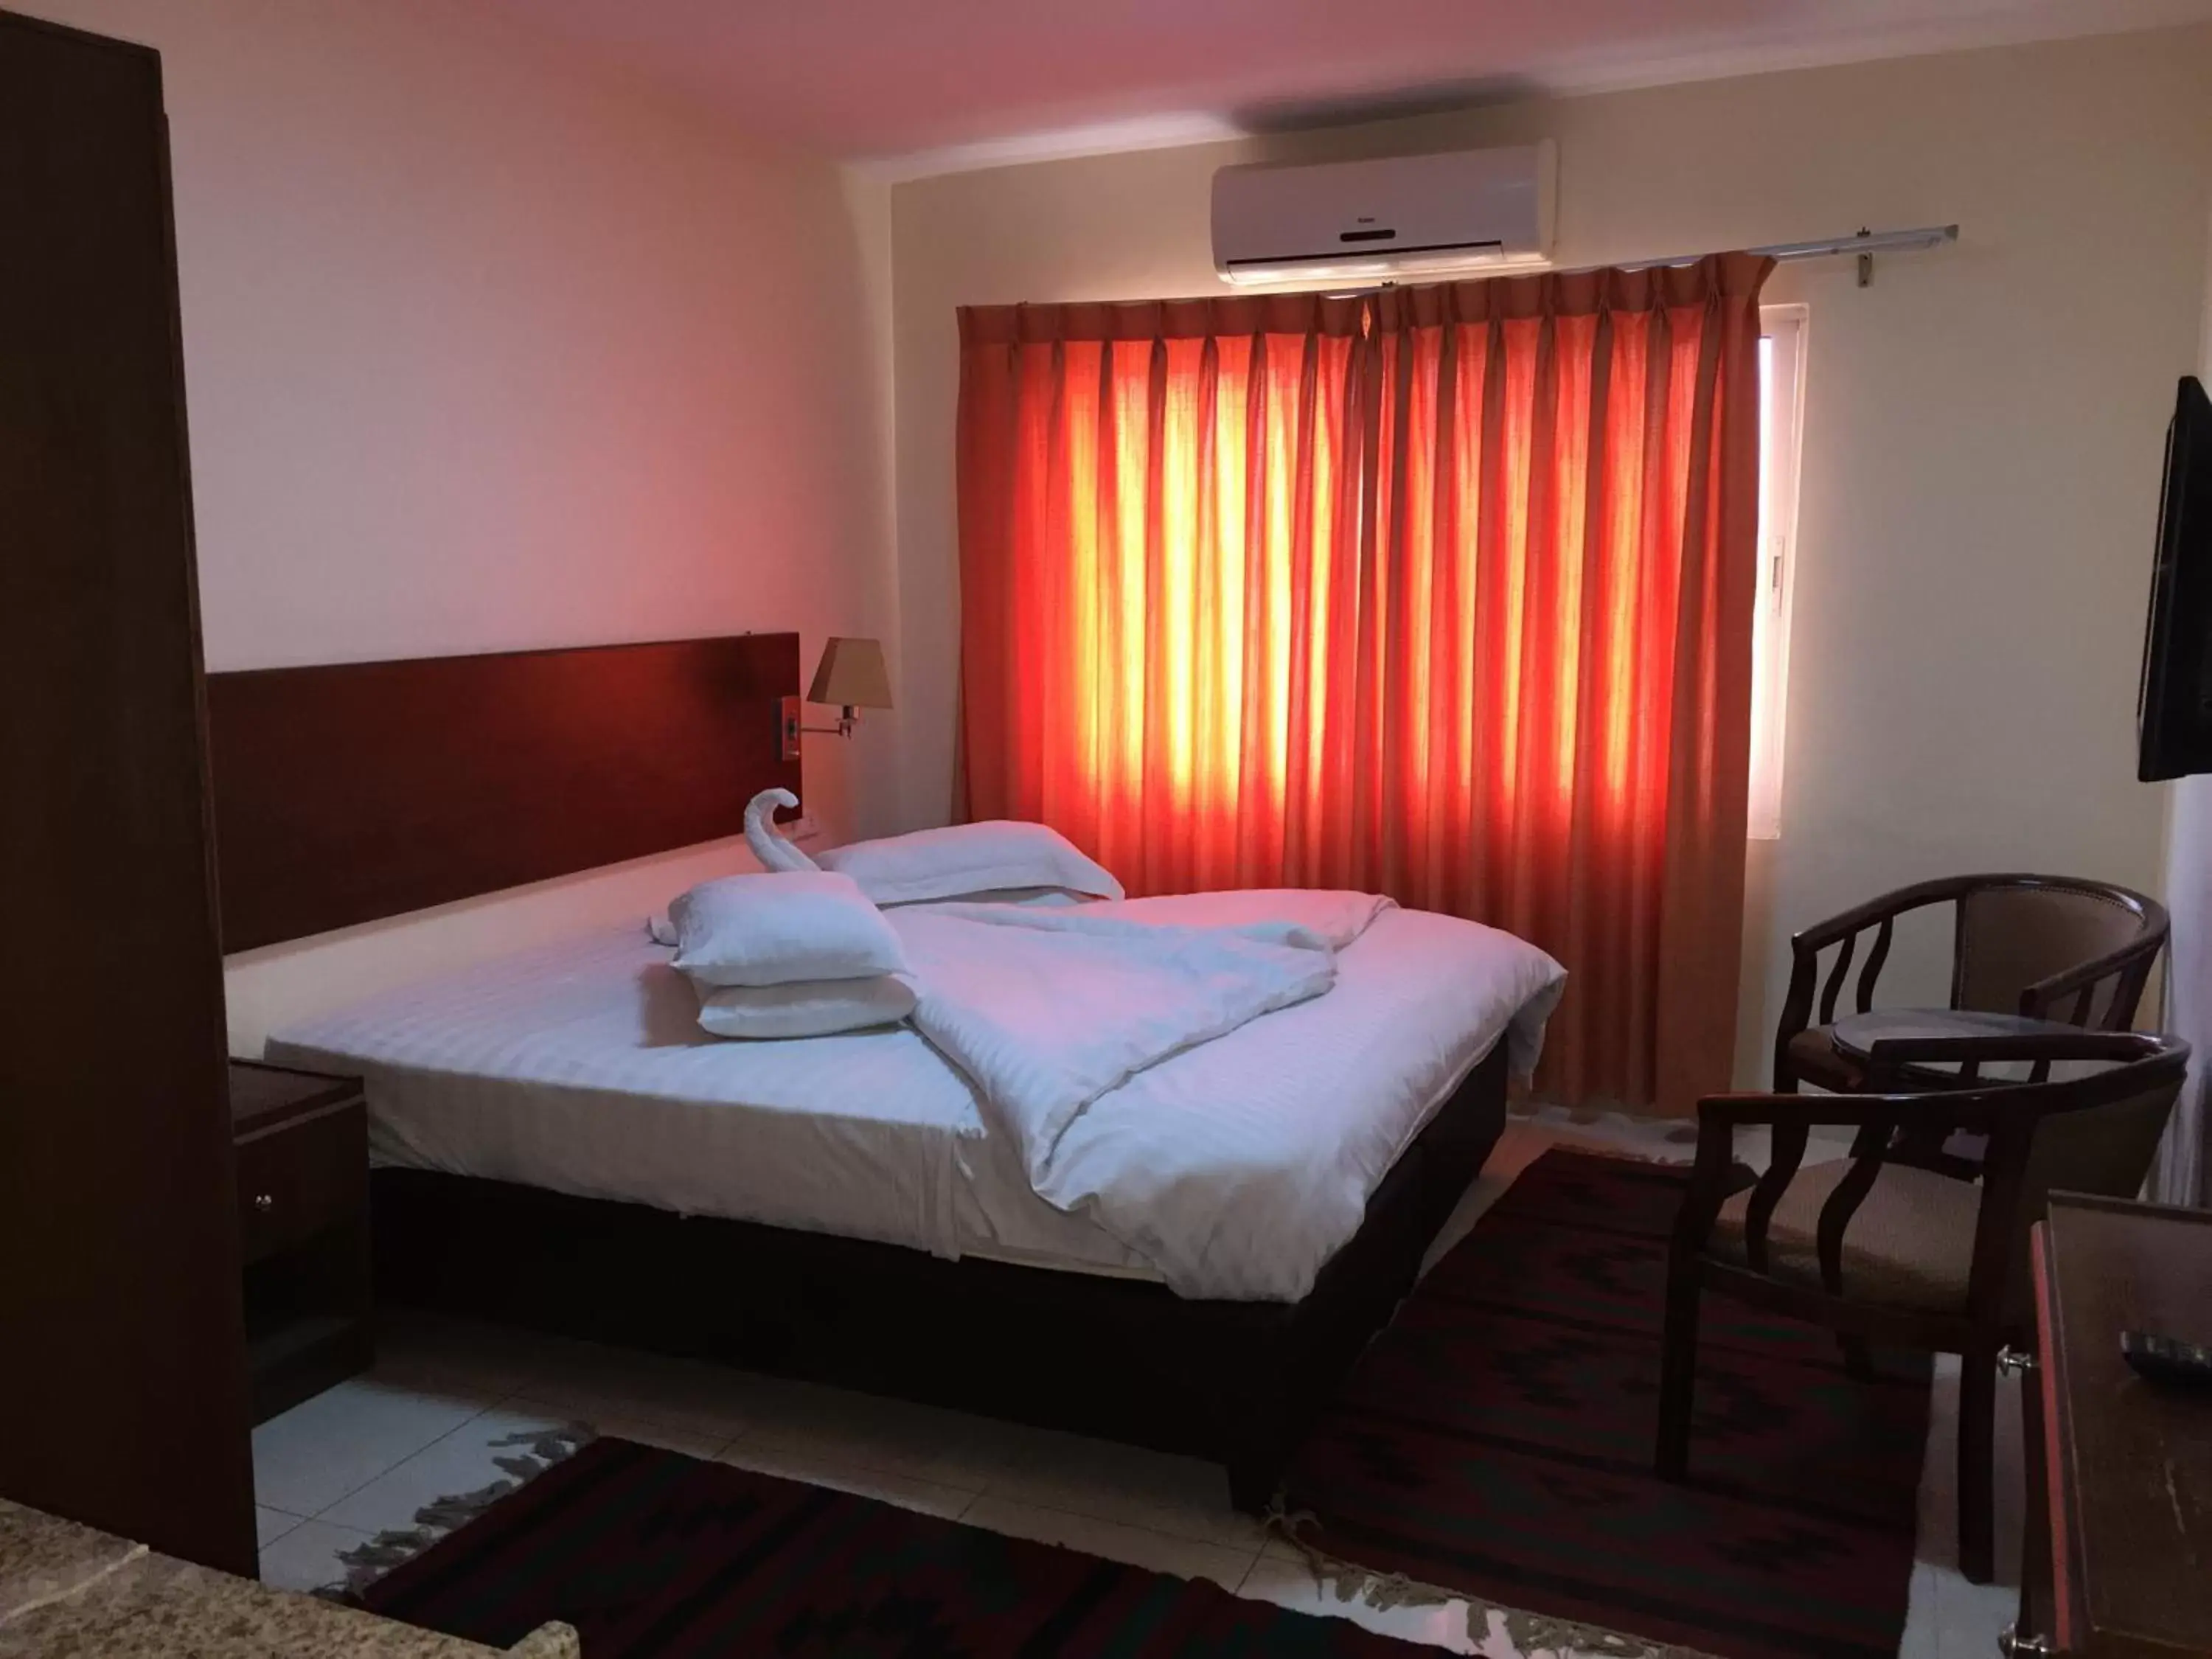 Bed, Room Photo in Zaina Plaza Hotel